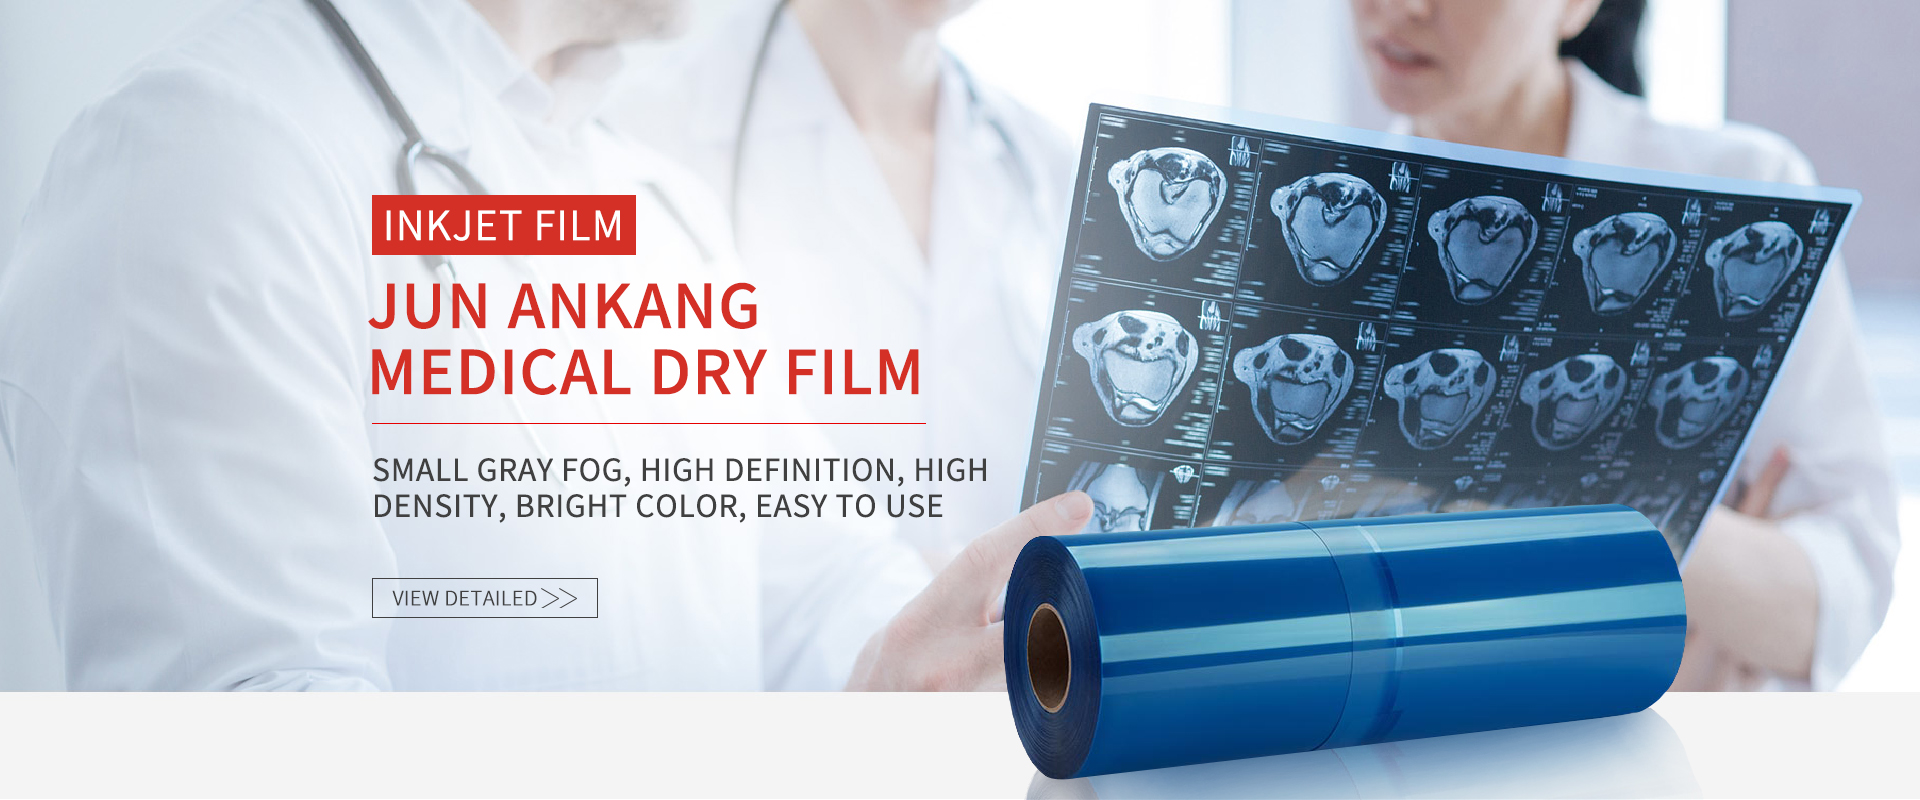 Jun Ankang medical dry film